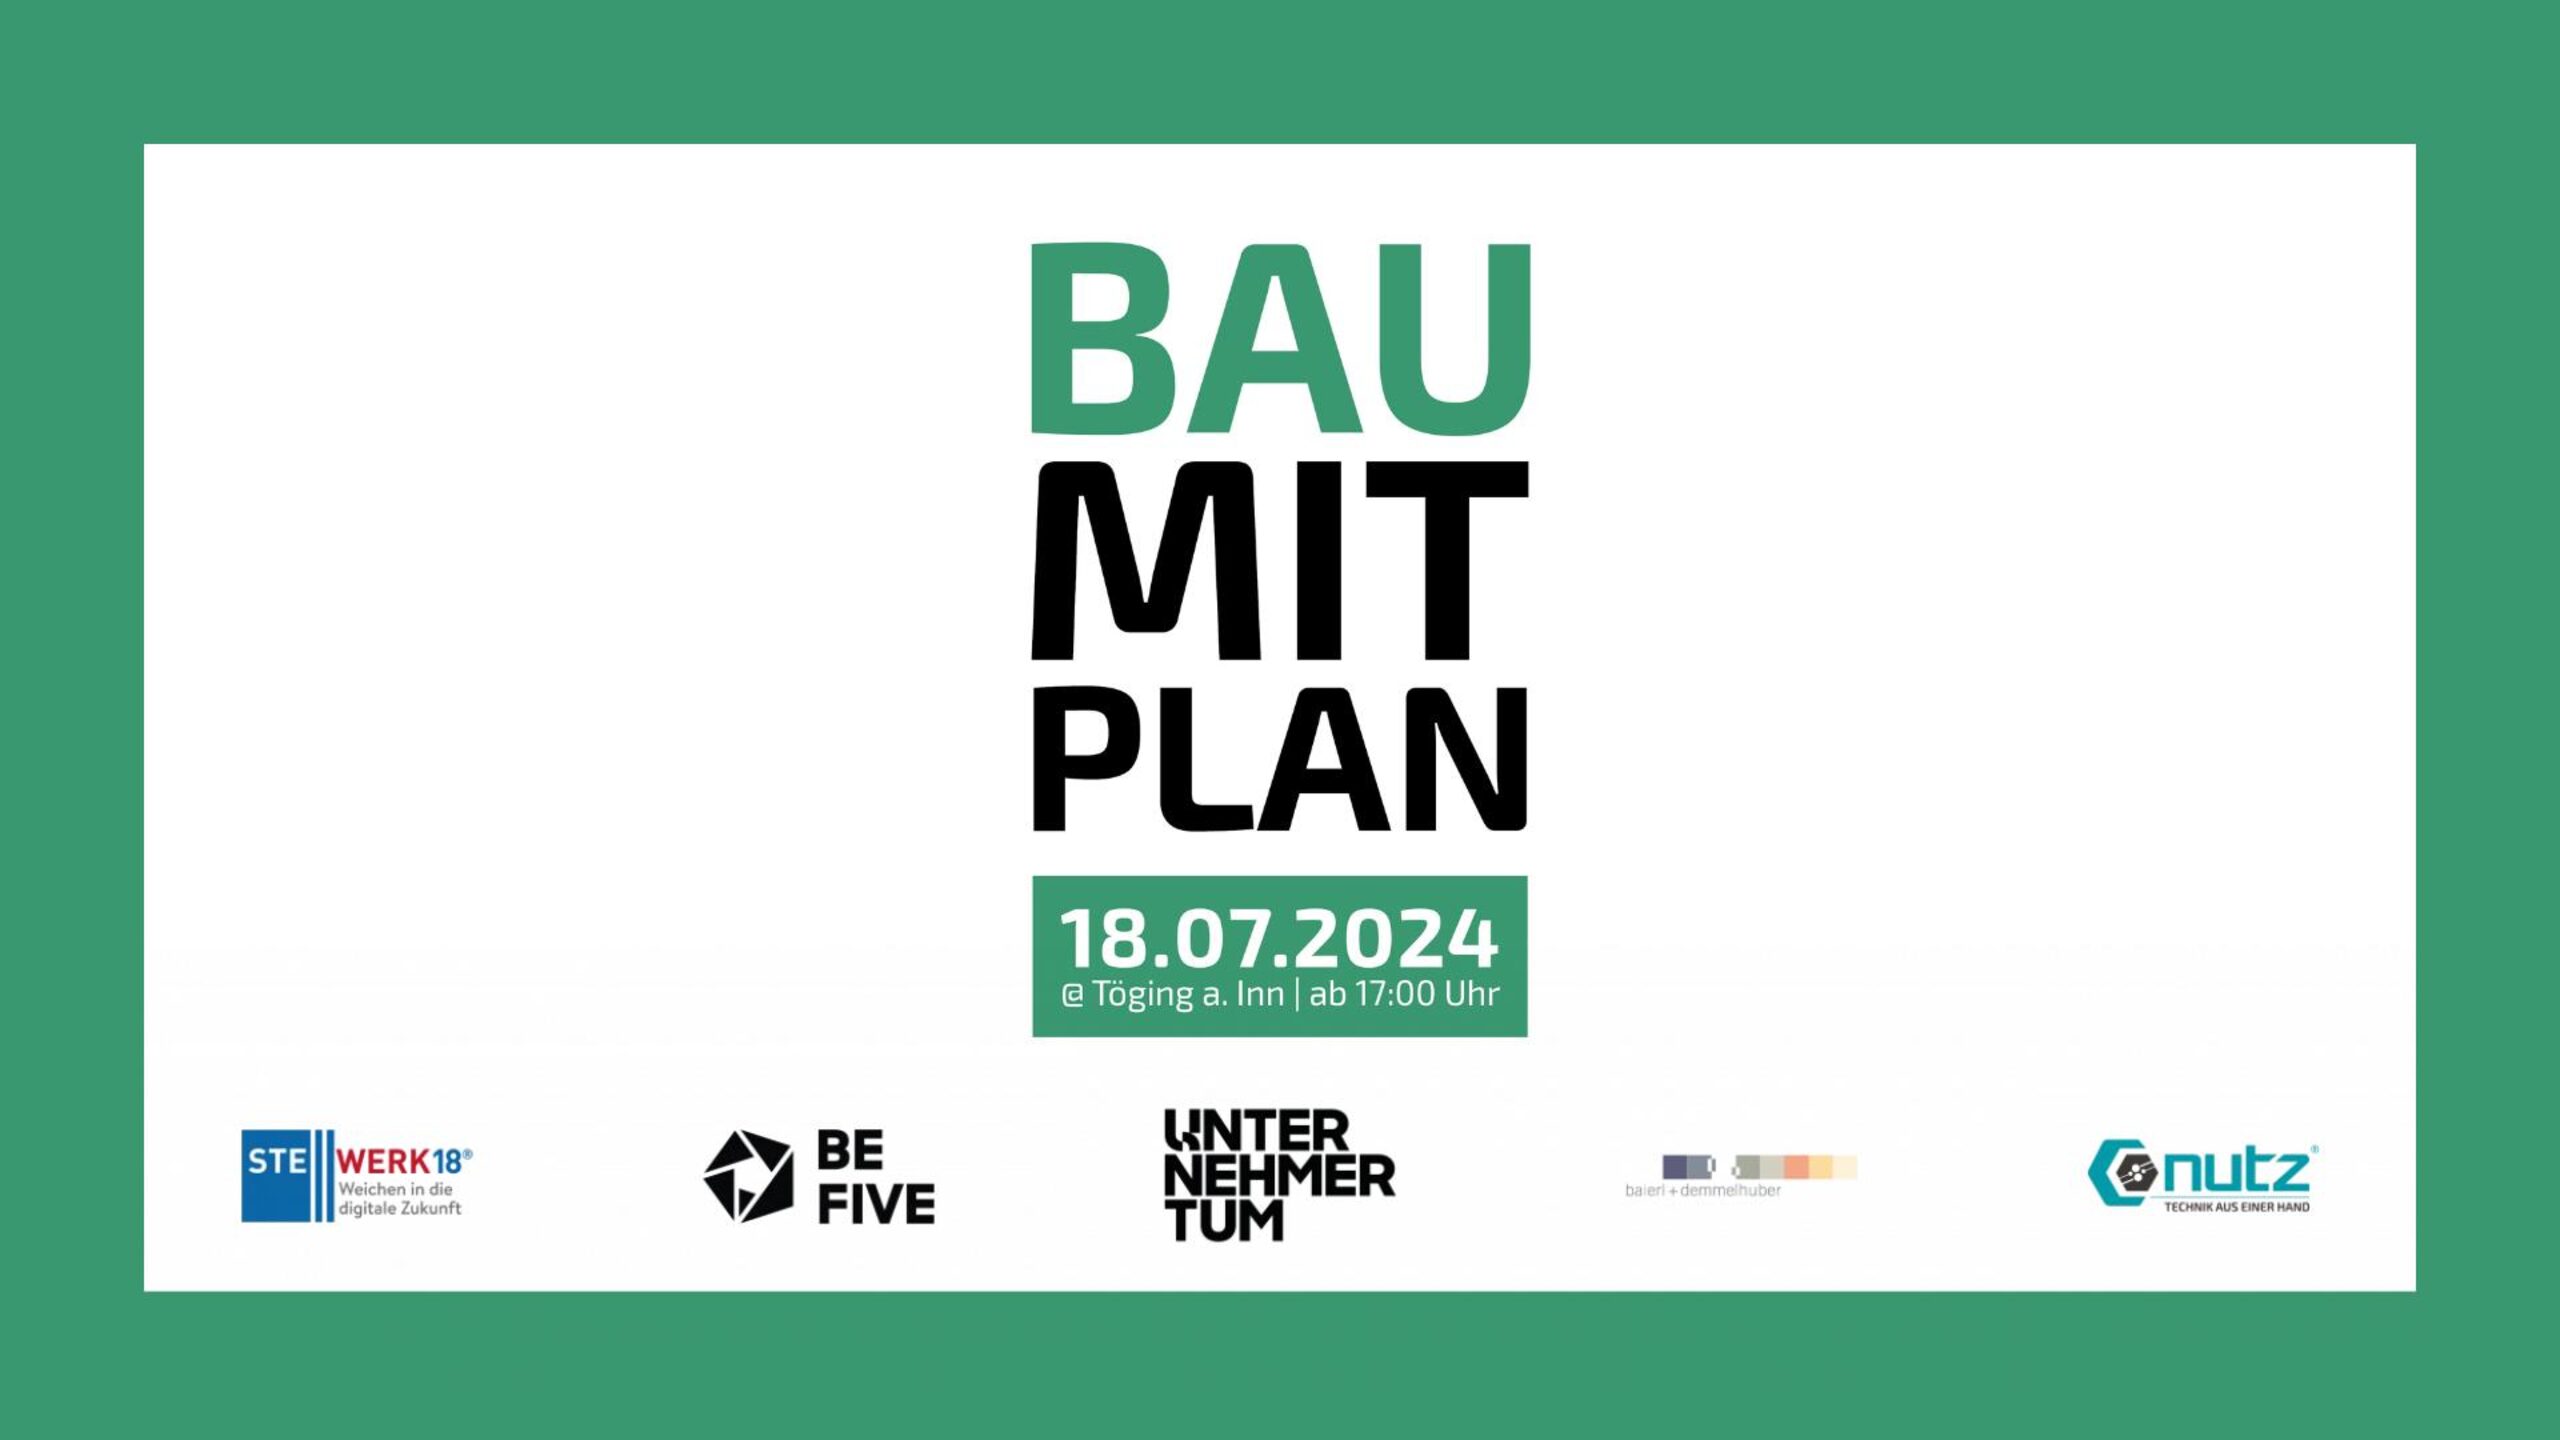 VA Bild Bau mit Plan 2024 pdf - BAU MIT PLAN 2024: Expertenforum für innovatives & nachhaltiges Bauen